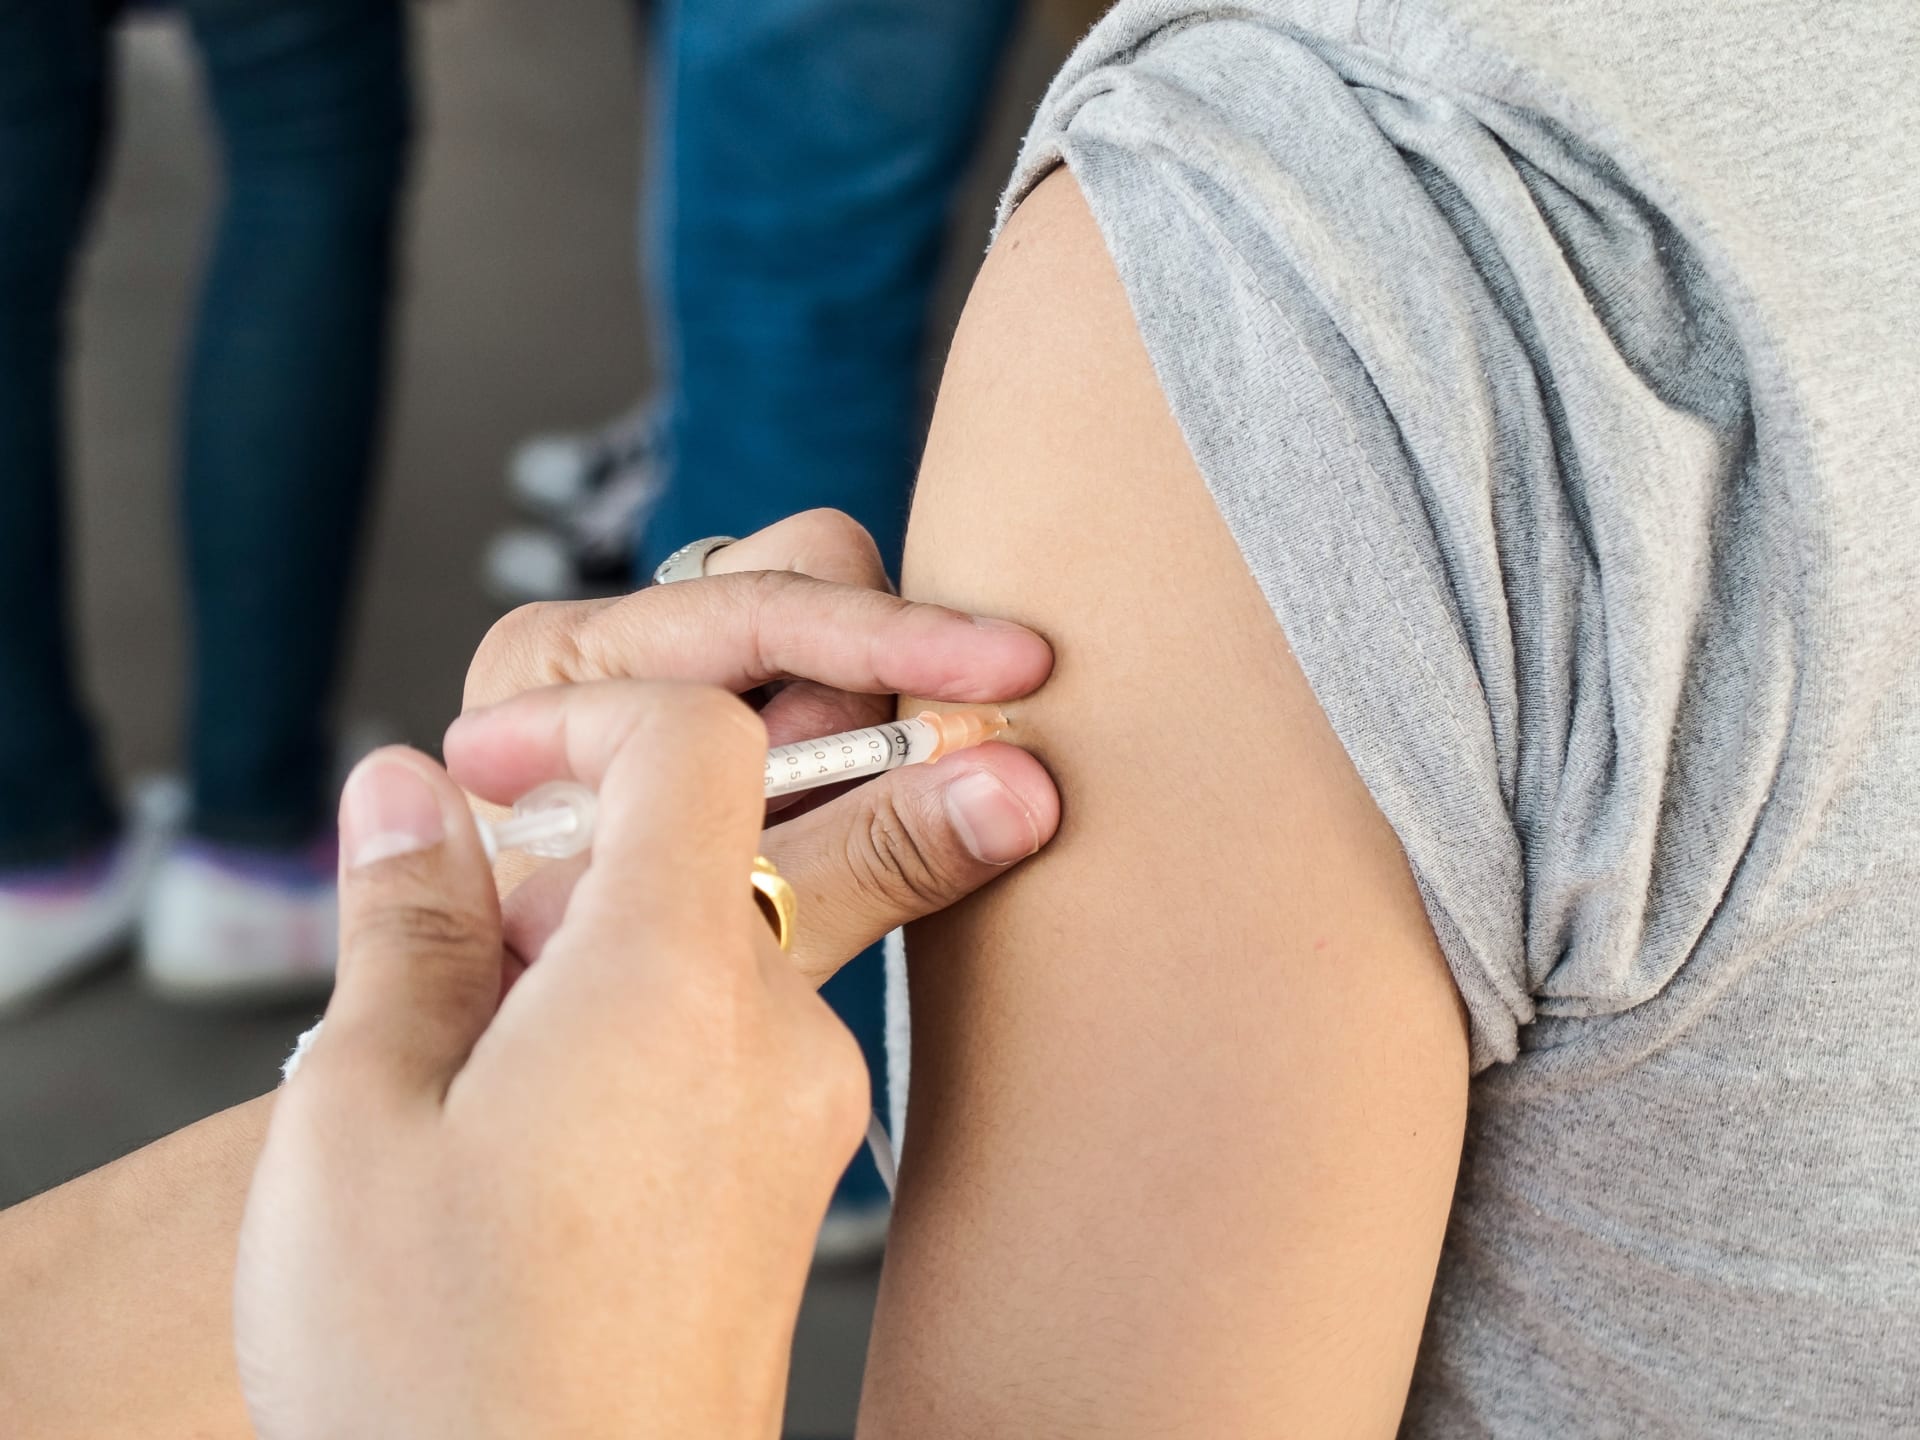 Očkování je podle odborníků jedinou šancí, jak pandemii koronaviru zvládnout.